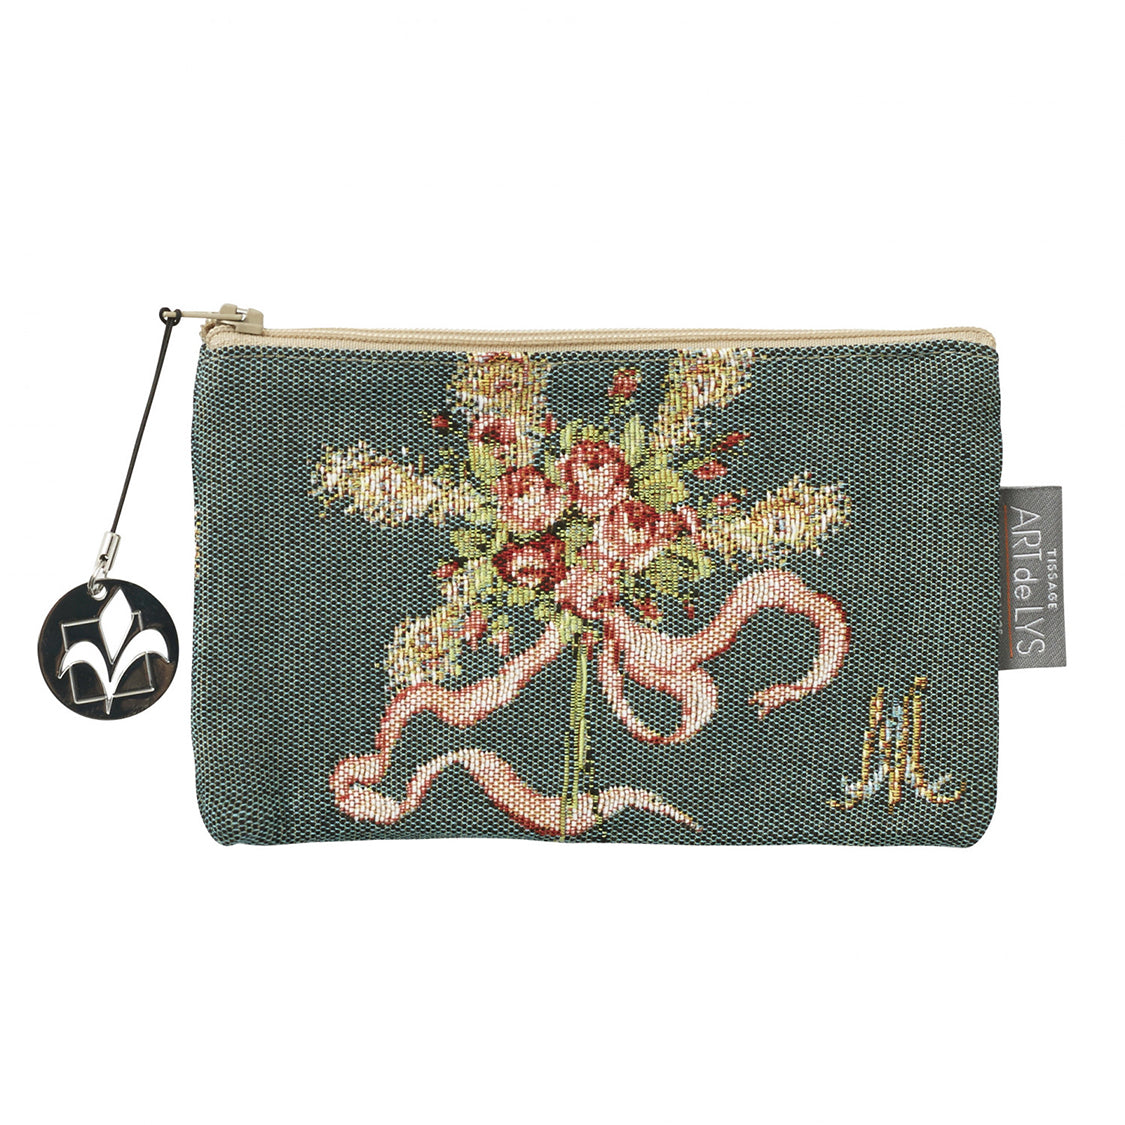 Bruges Houses utility bag - Bruges - Bags & purses - Mille Fleurs Tapestries